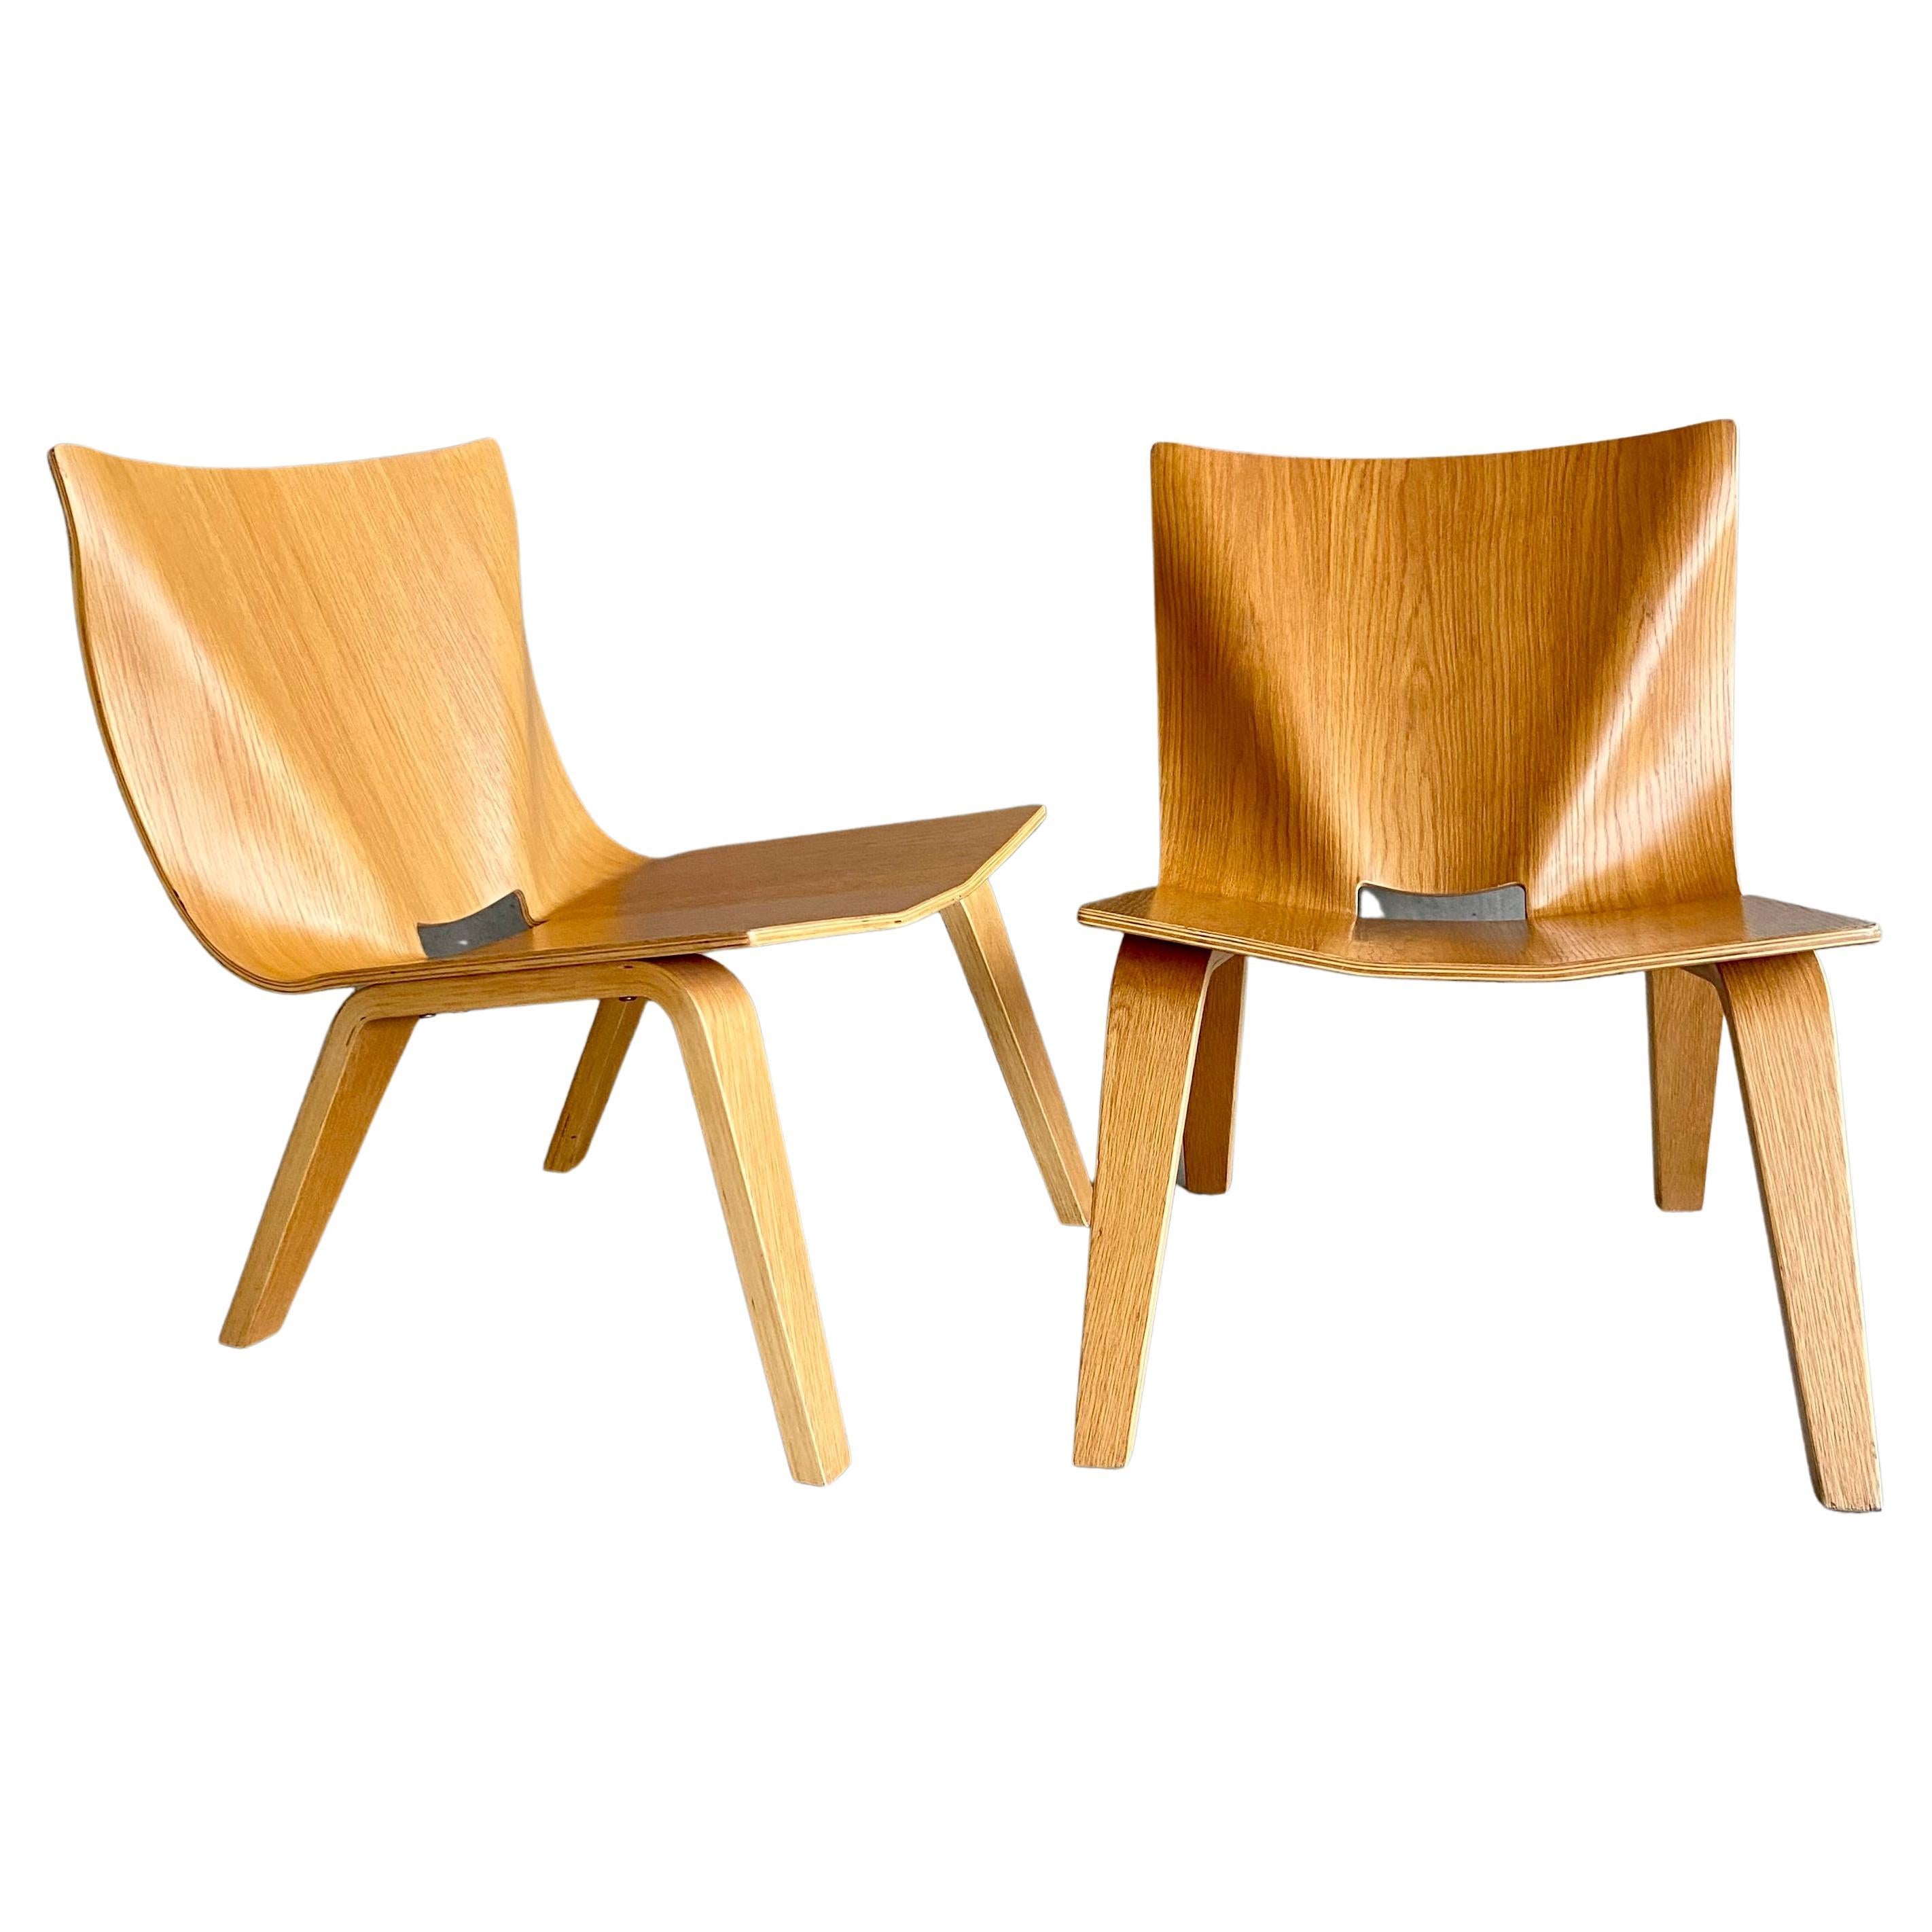 Wir stellen Ihnen ein Paar exquisite, niedrige Sessel aus Eichenfeinsperrholz vor, die eine perfekte Mischung aus Stil, Komfort und Handwerkskunst darstellen. Diese Stühle sind gut verarbeitet, mit schönen, gut durchdachten Faltlinien sowohl auf der